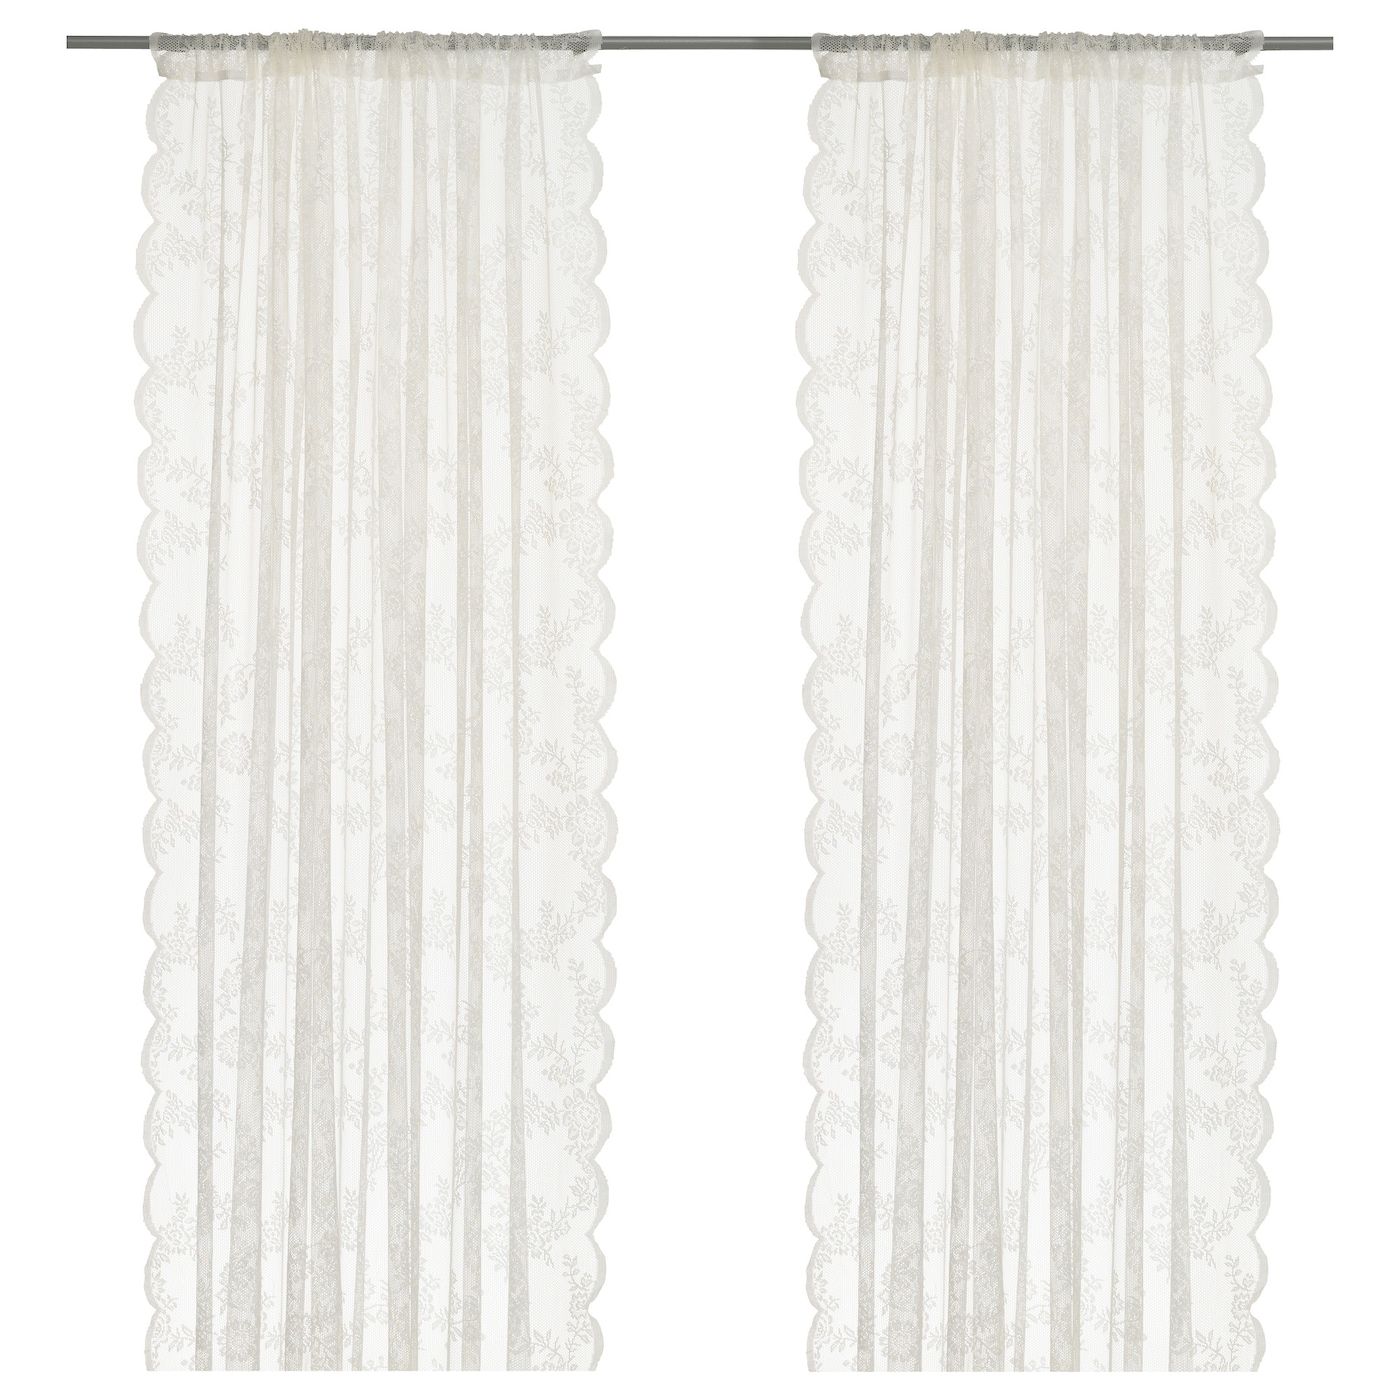 ALVINE SPETS Lace Curtains